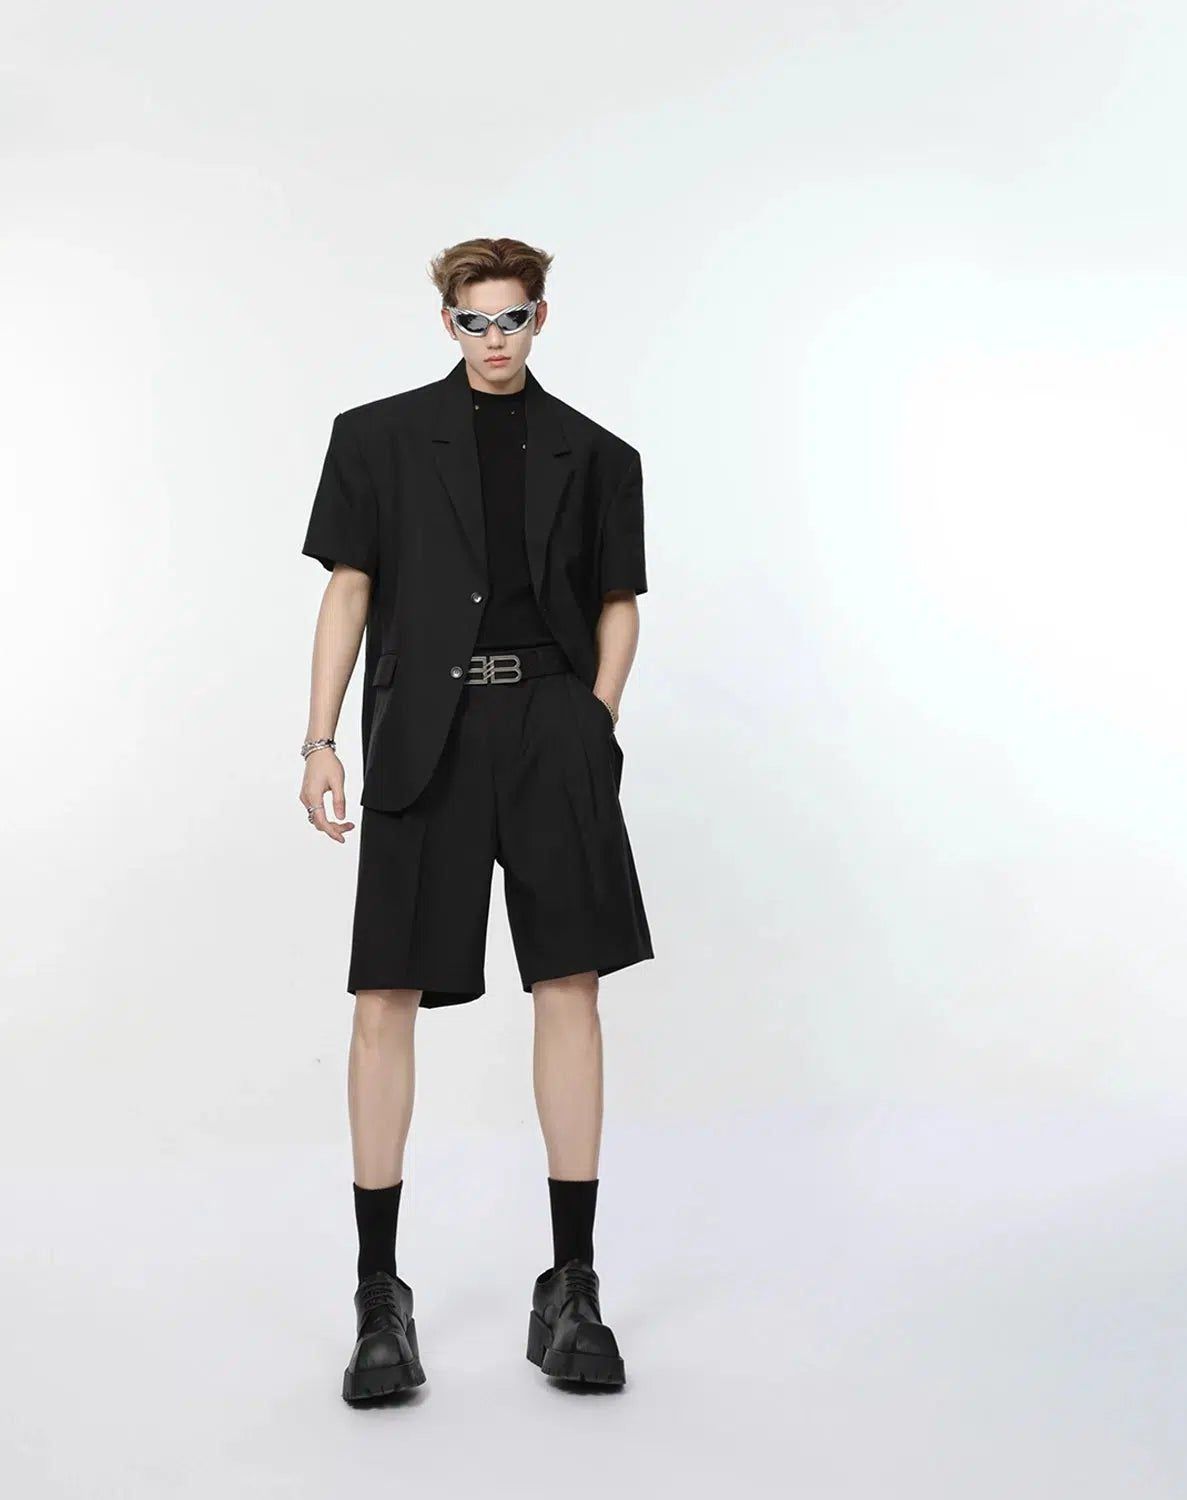 Solid Color Shoulder Pad Blazer & Pants & Shorts Set Korean Street Fashion Clothing Set By Turn Tide Shop Online at OH Vault